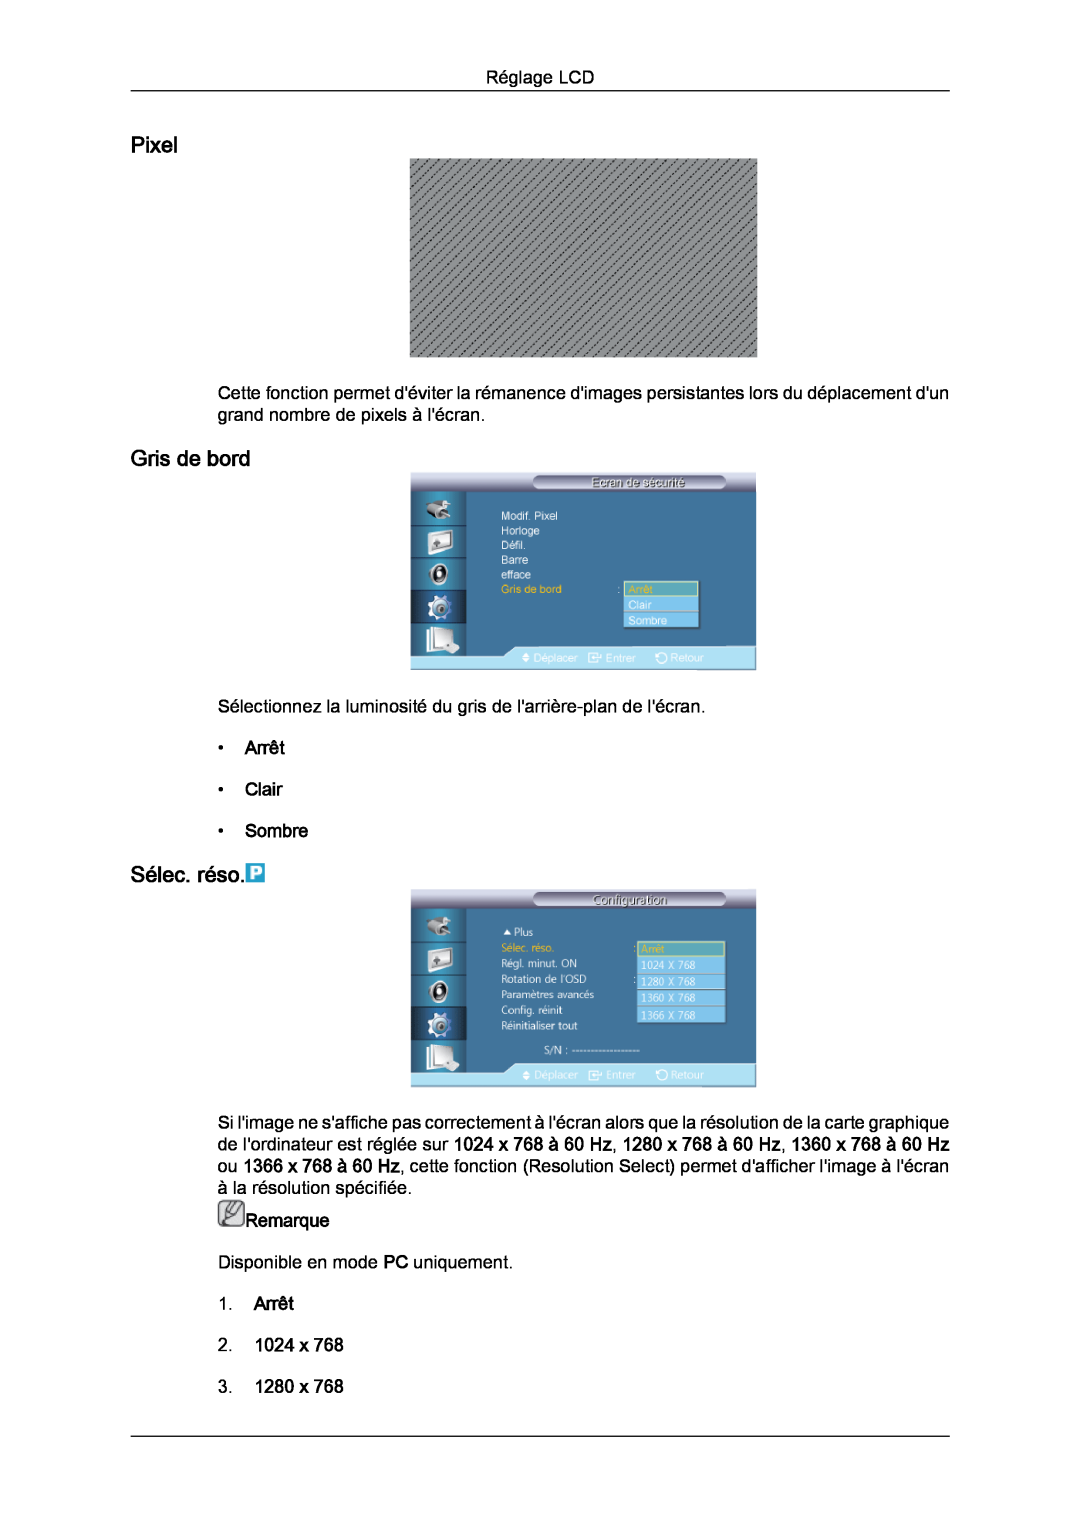 Samsung LH40CRPMBC/EN manual Pixel, Gris de bord, Sélec. réso, Arrêt Clair Sombre, Arrêt 2. 1024 x 3. 1280 x, Remarque 